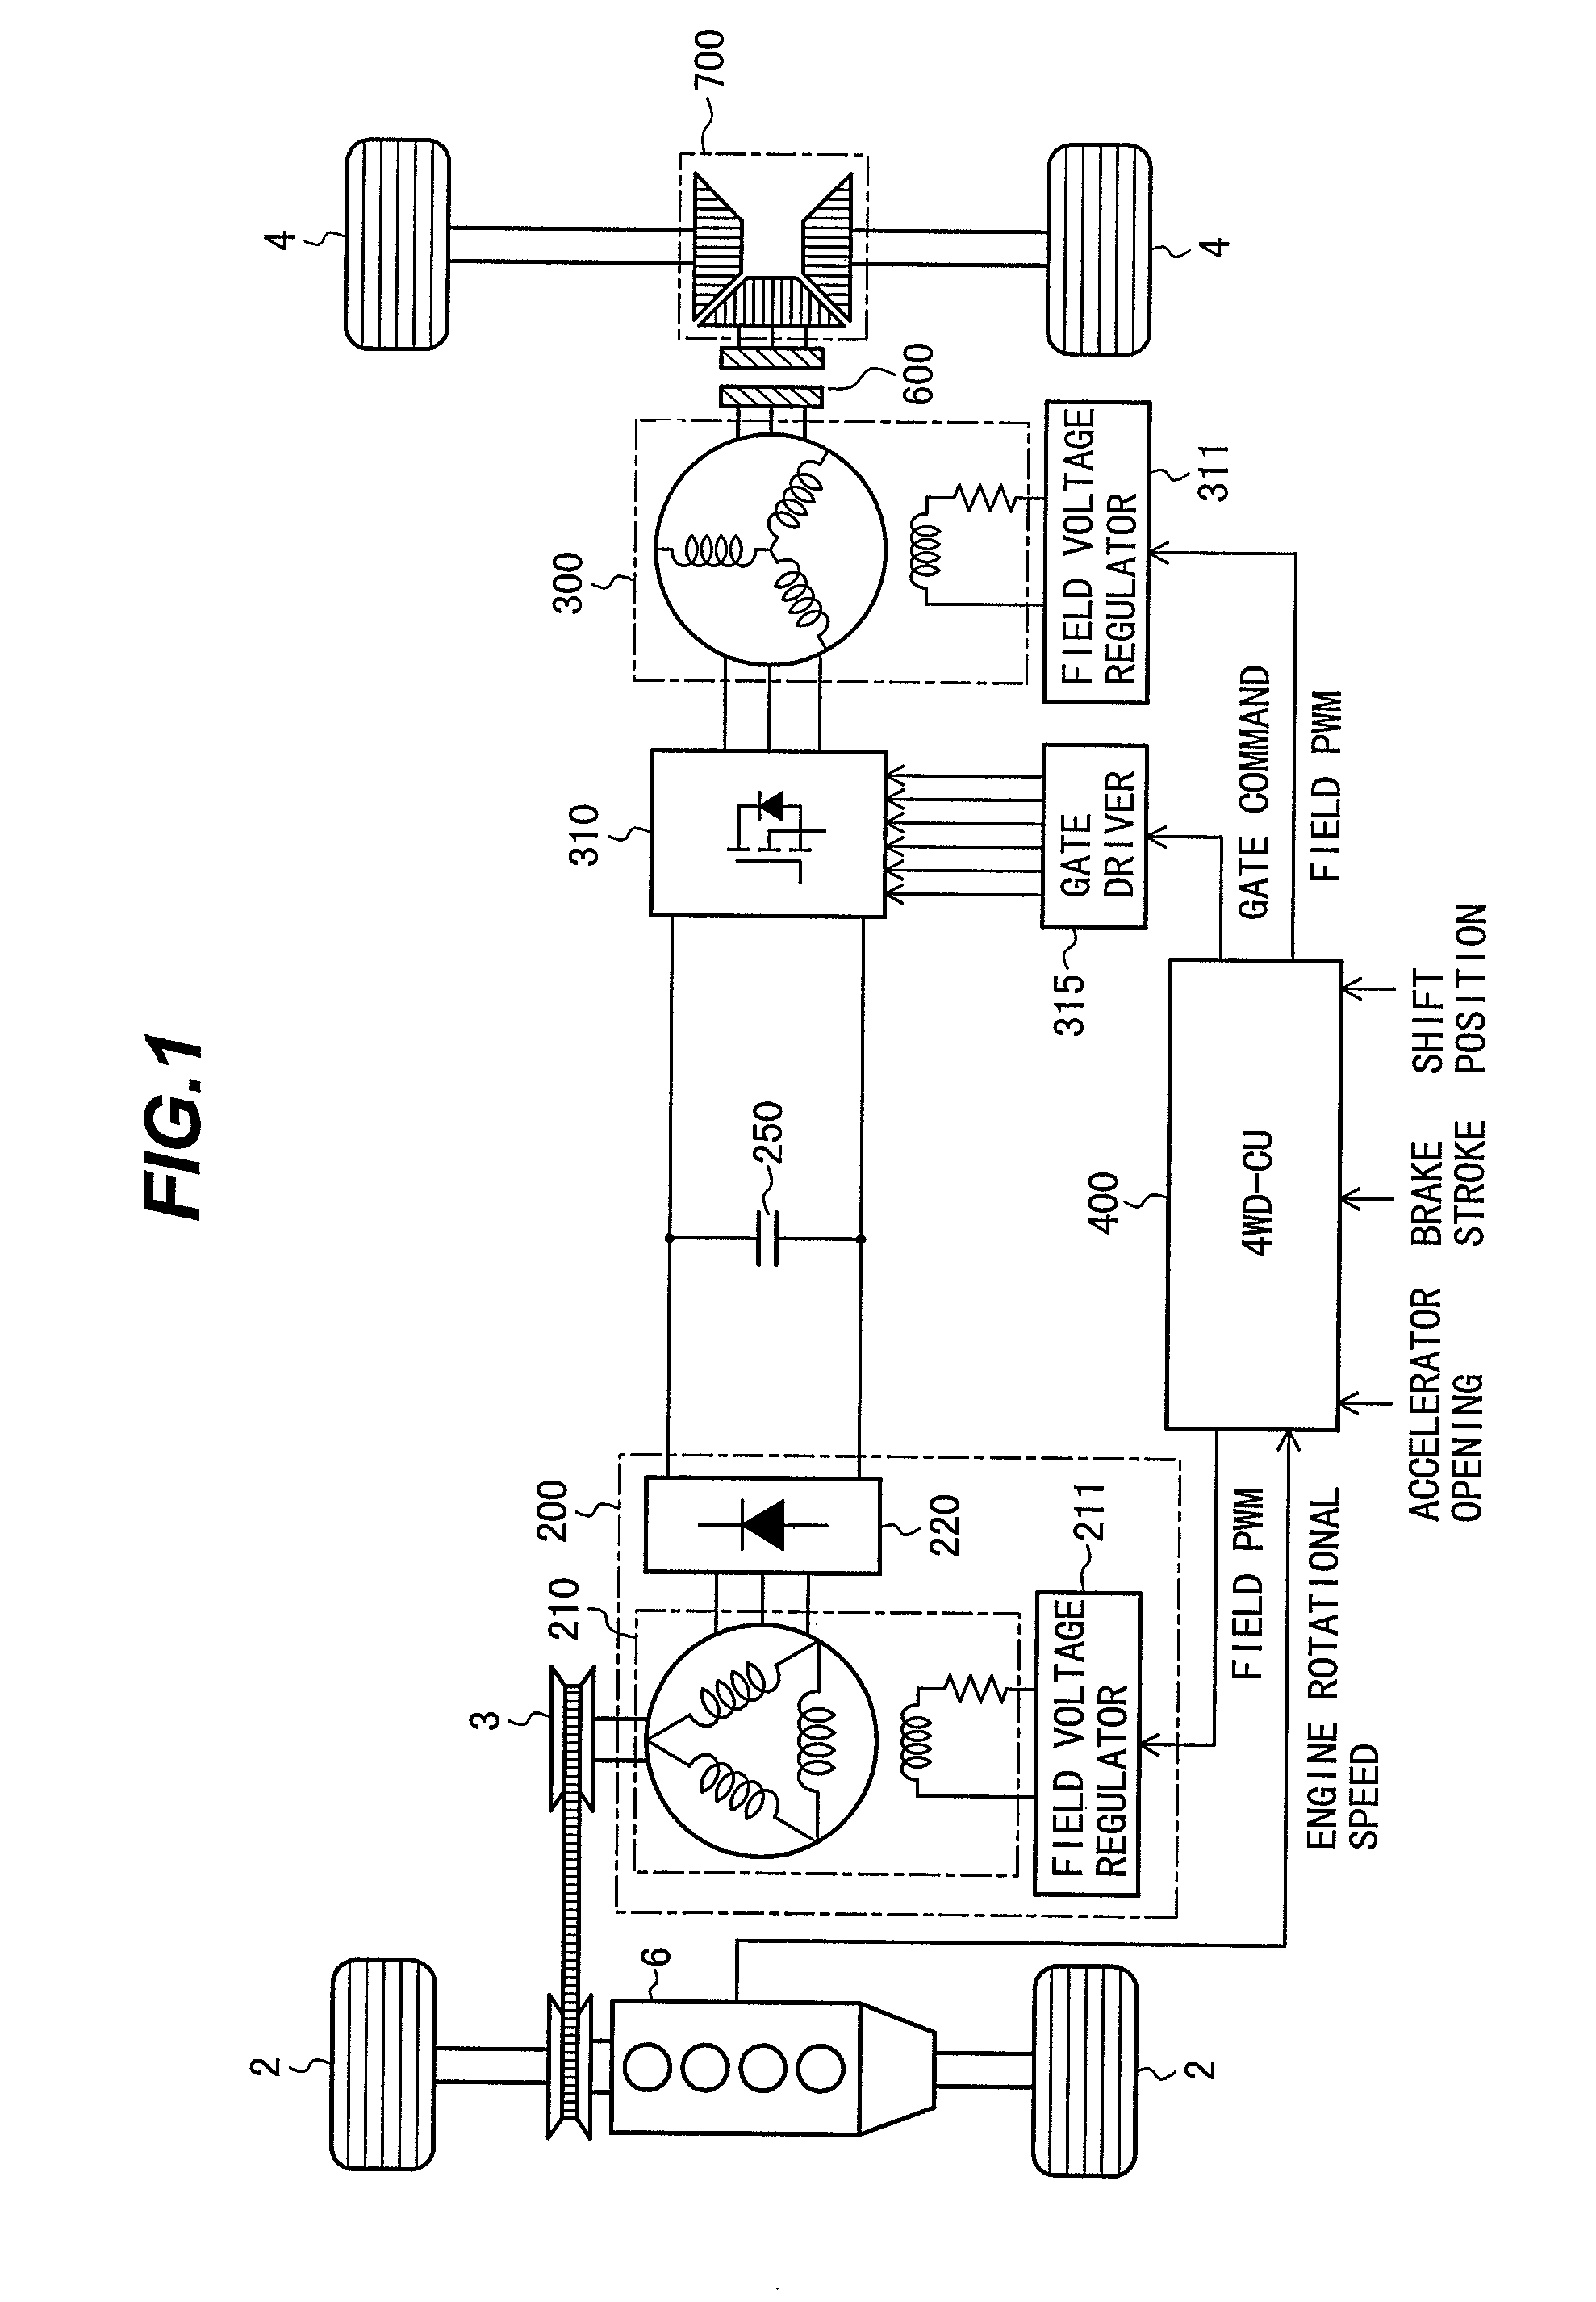 Generator control unit